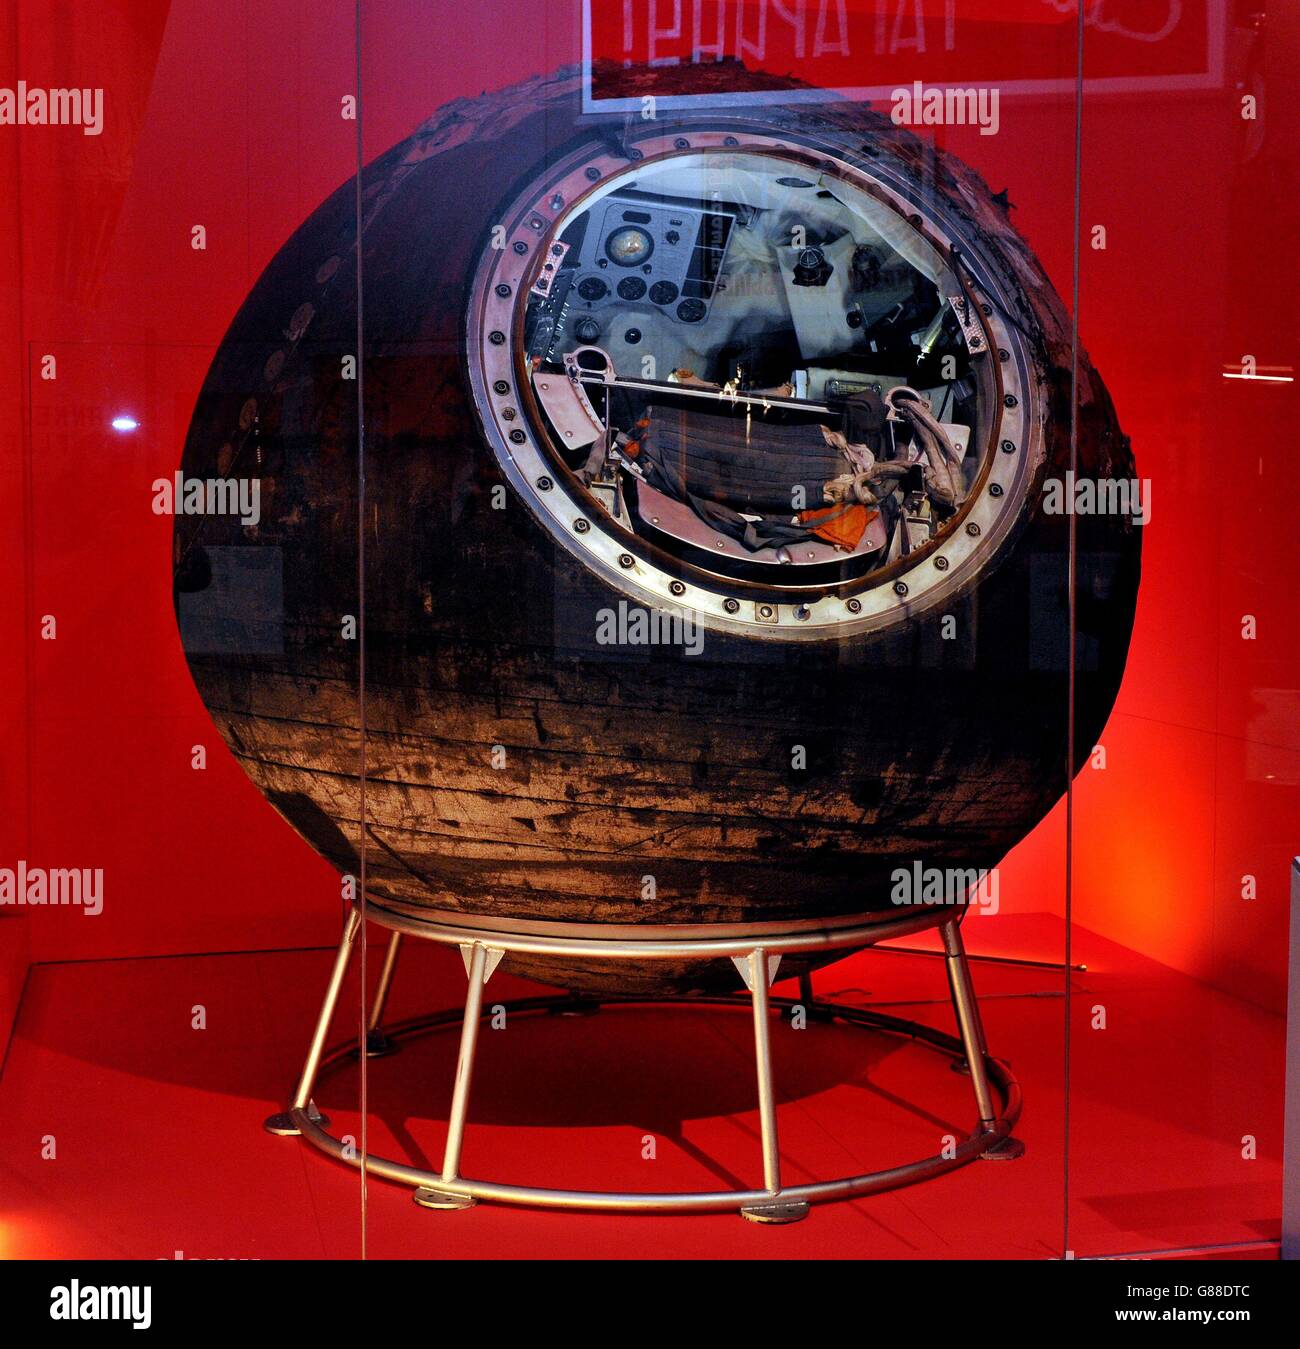 Vostok-6, die Raumkapsel, die von Valentina Tereshkova, der ersten Frau im Weltraum, als Teil des Science Museum in Londons neuer Ausstellung Cosmonauts: Geburtsstunde des Weltraumzeitalters pilotiert wurde. Stockfoto